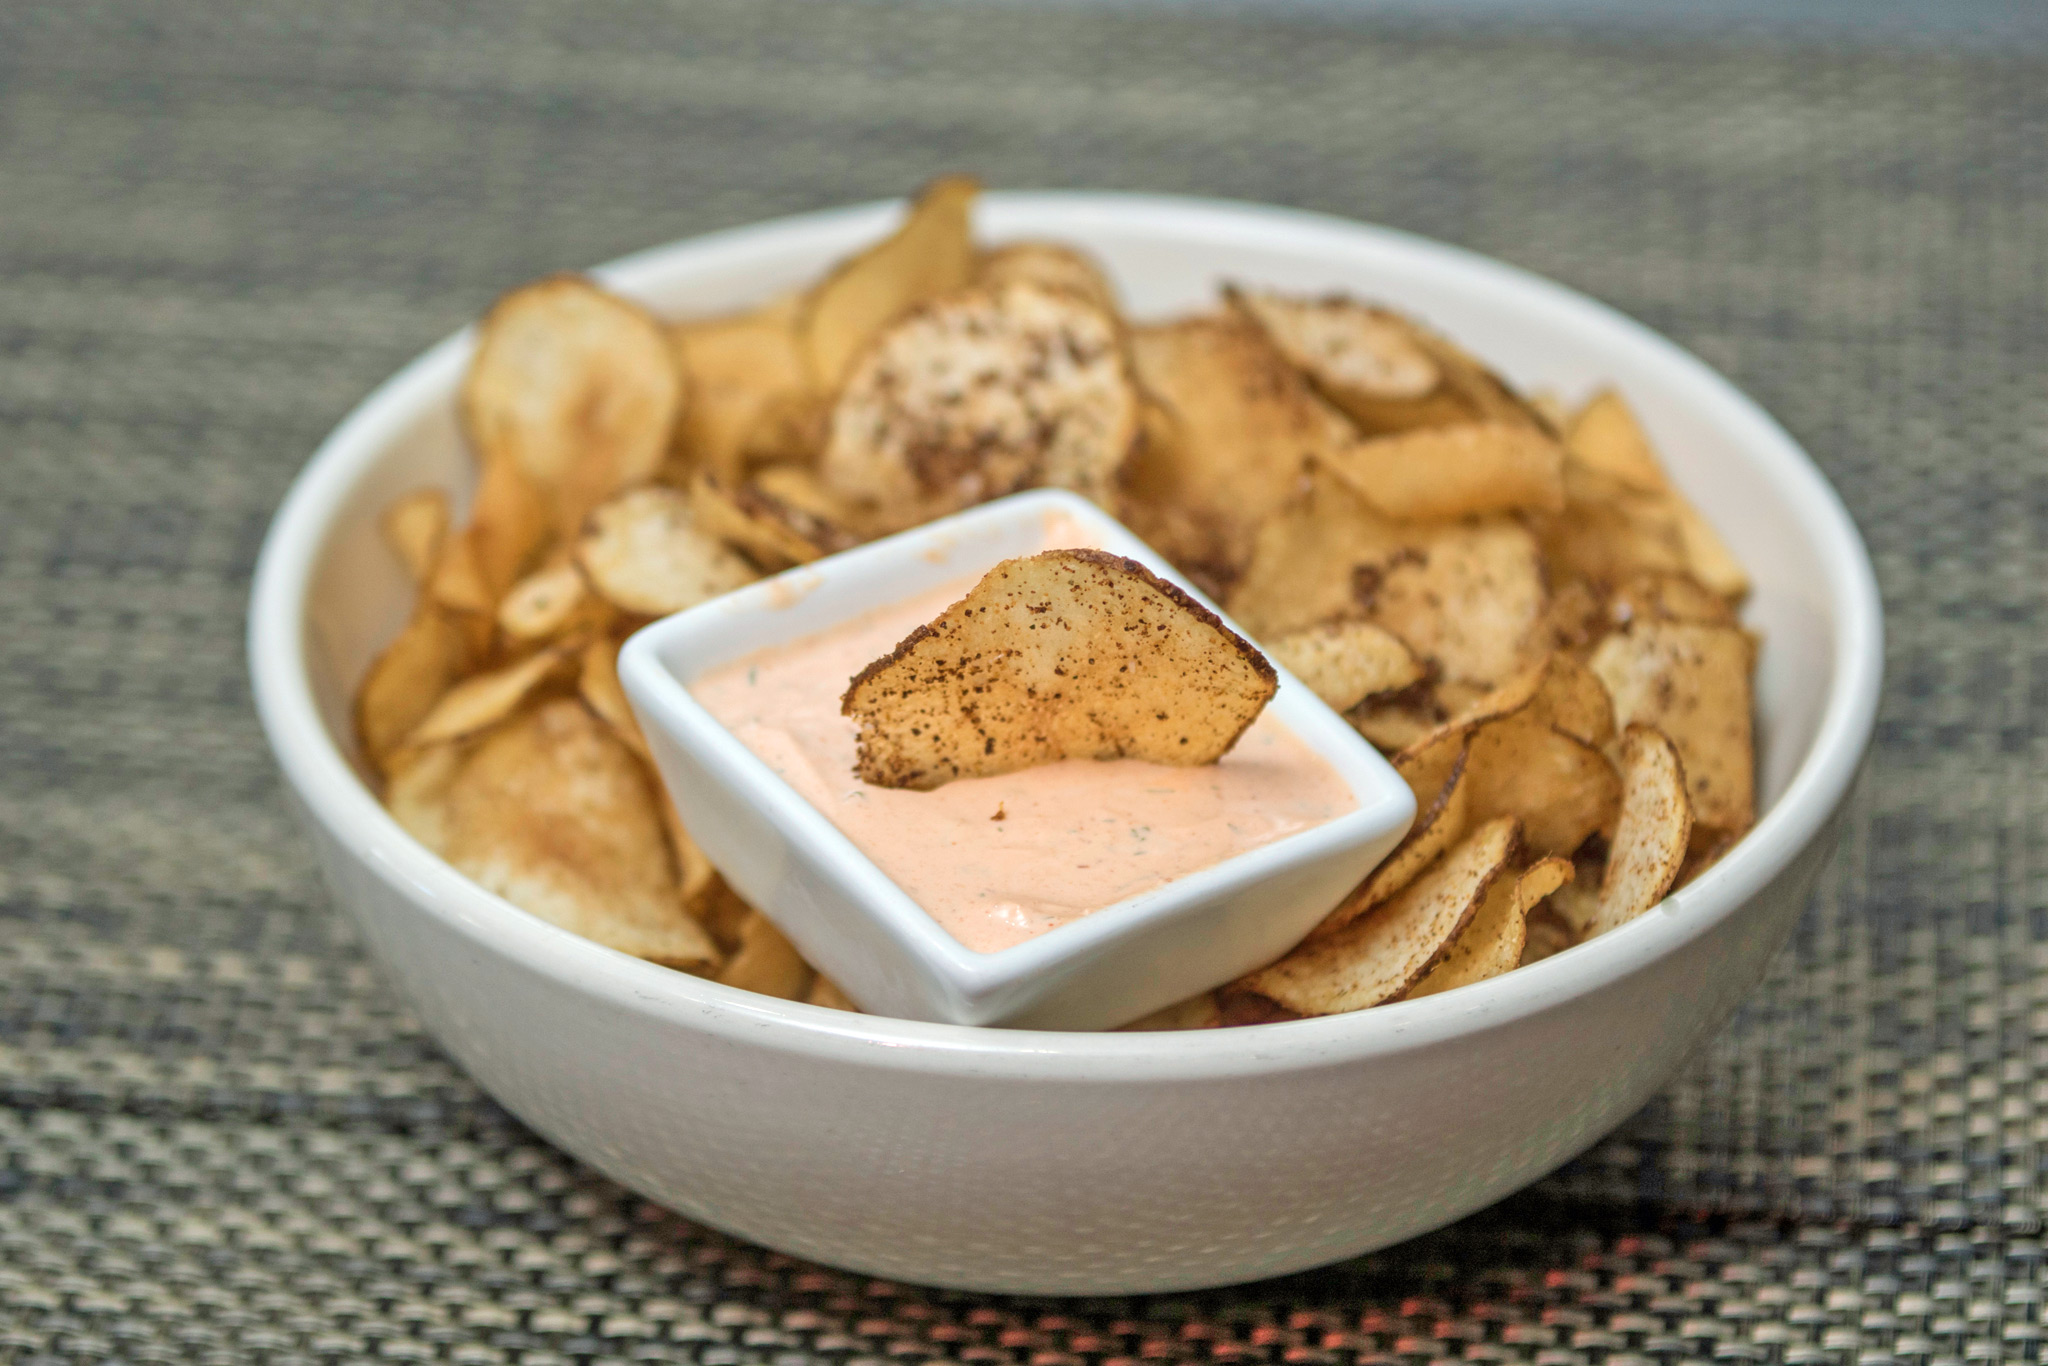 “Za” Flavored Chips